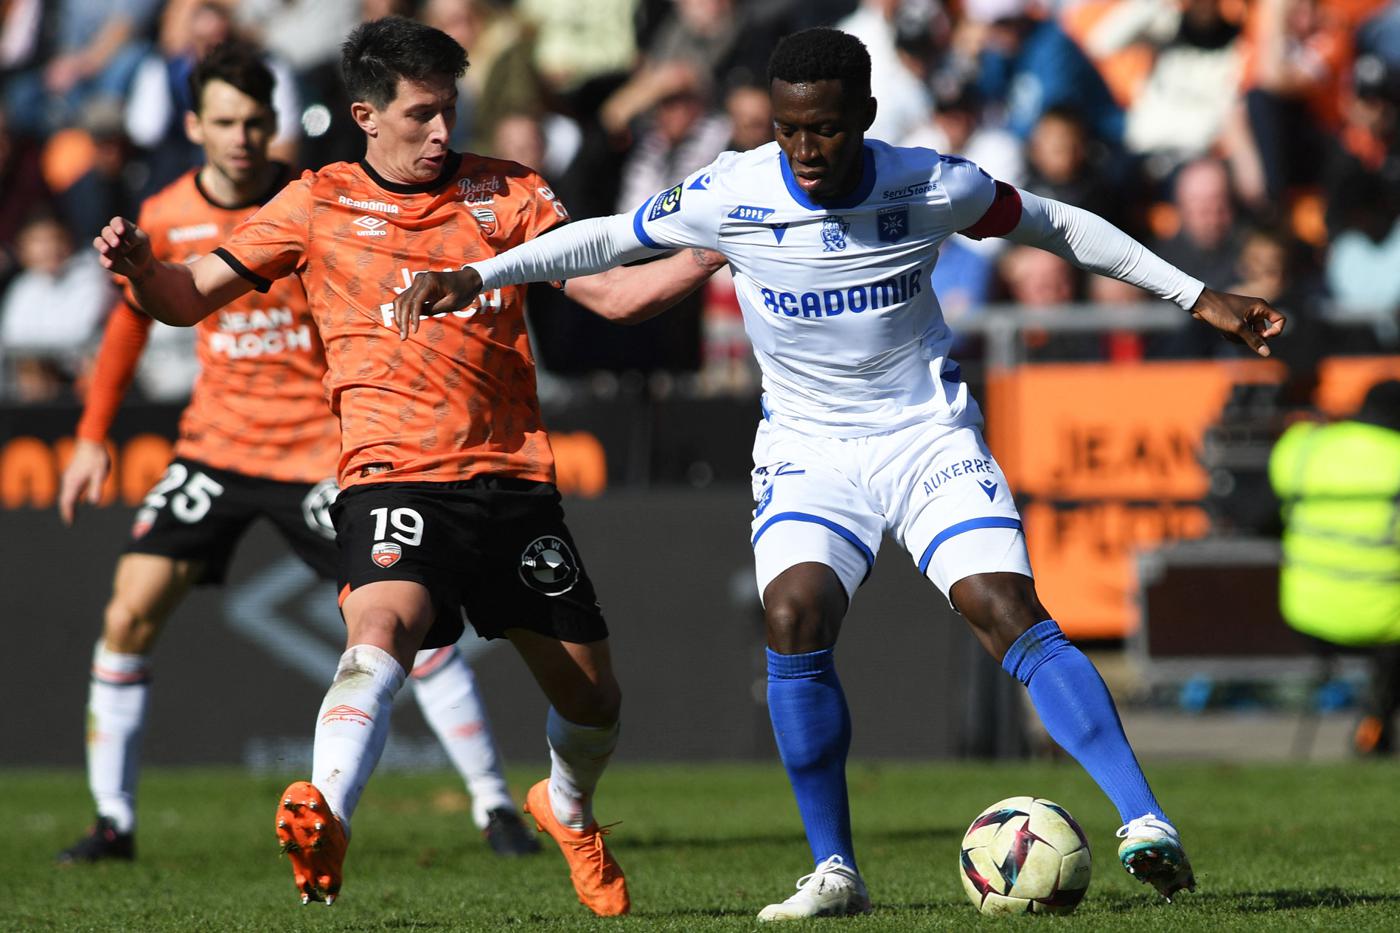 Lorient v Auxerre - 0-1. Mistrzostwa Francji, runda 25. Przegląd meczu, statystyki.